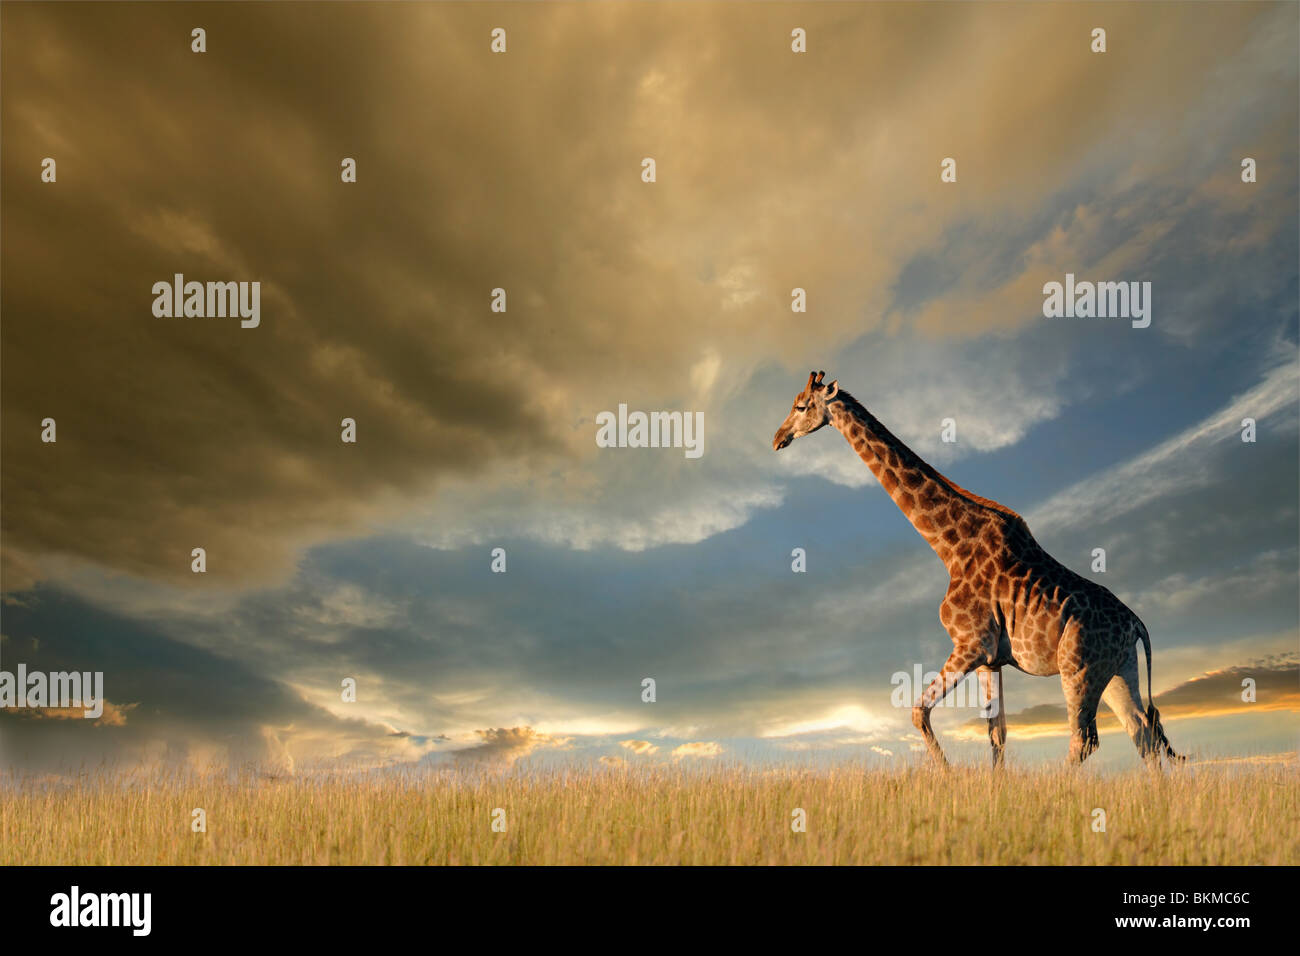 Una giraffa camminando sulle pianure africane contro un cielo drammatico Foto Stock